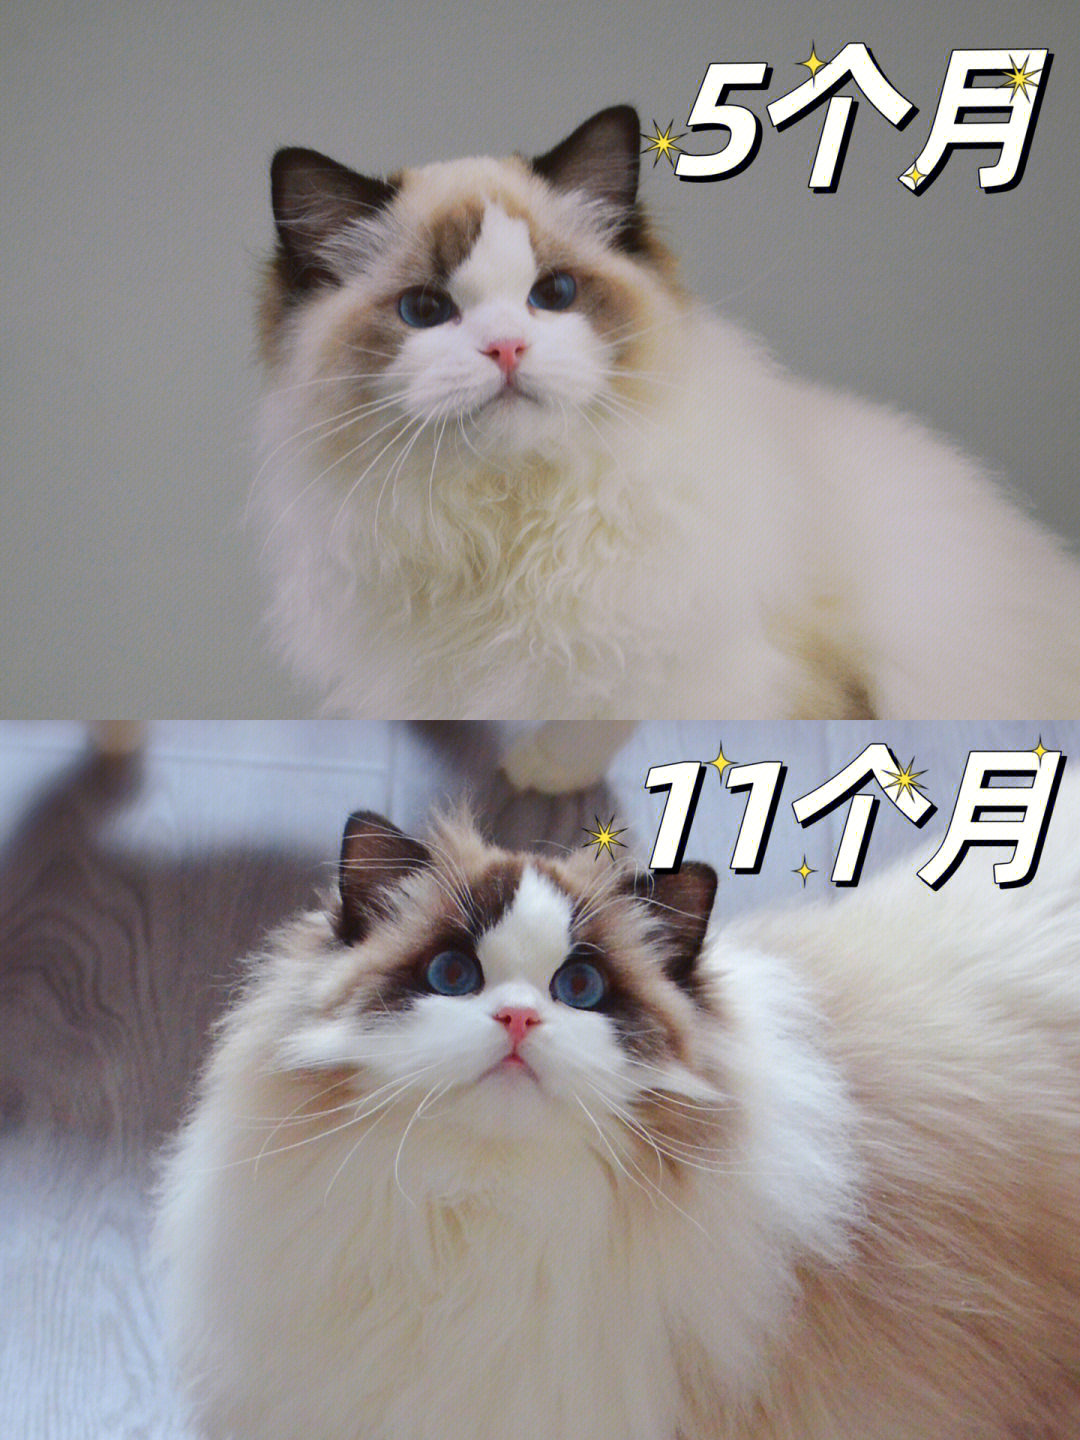 布偶猫的成长蜕变图图片